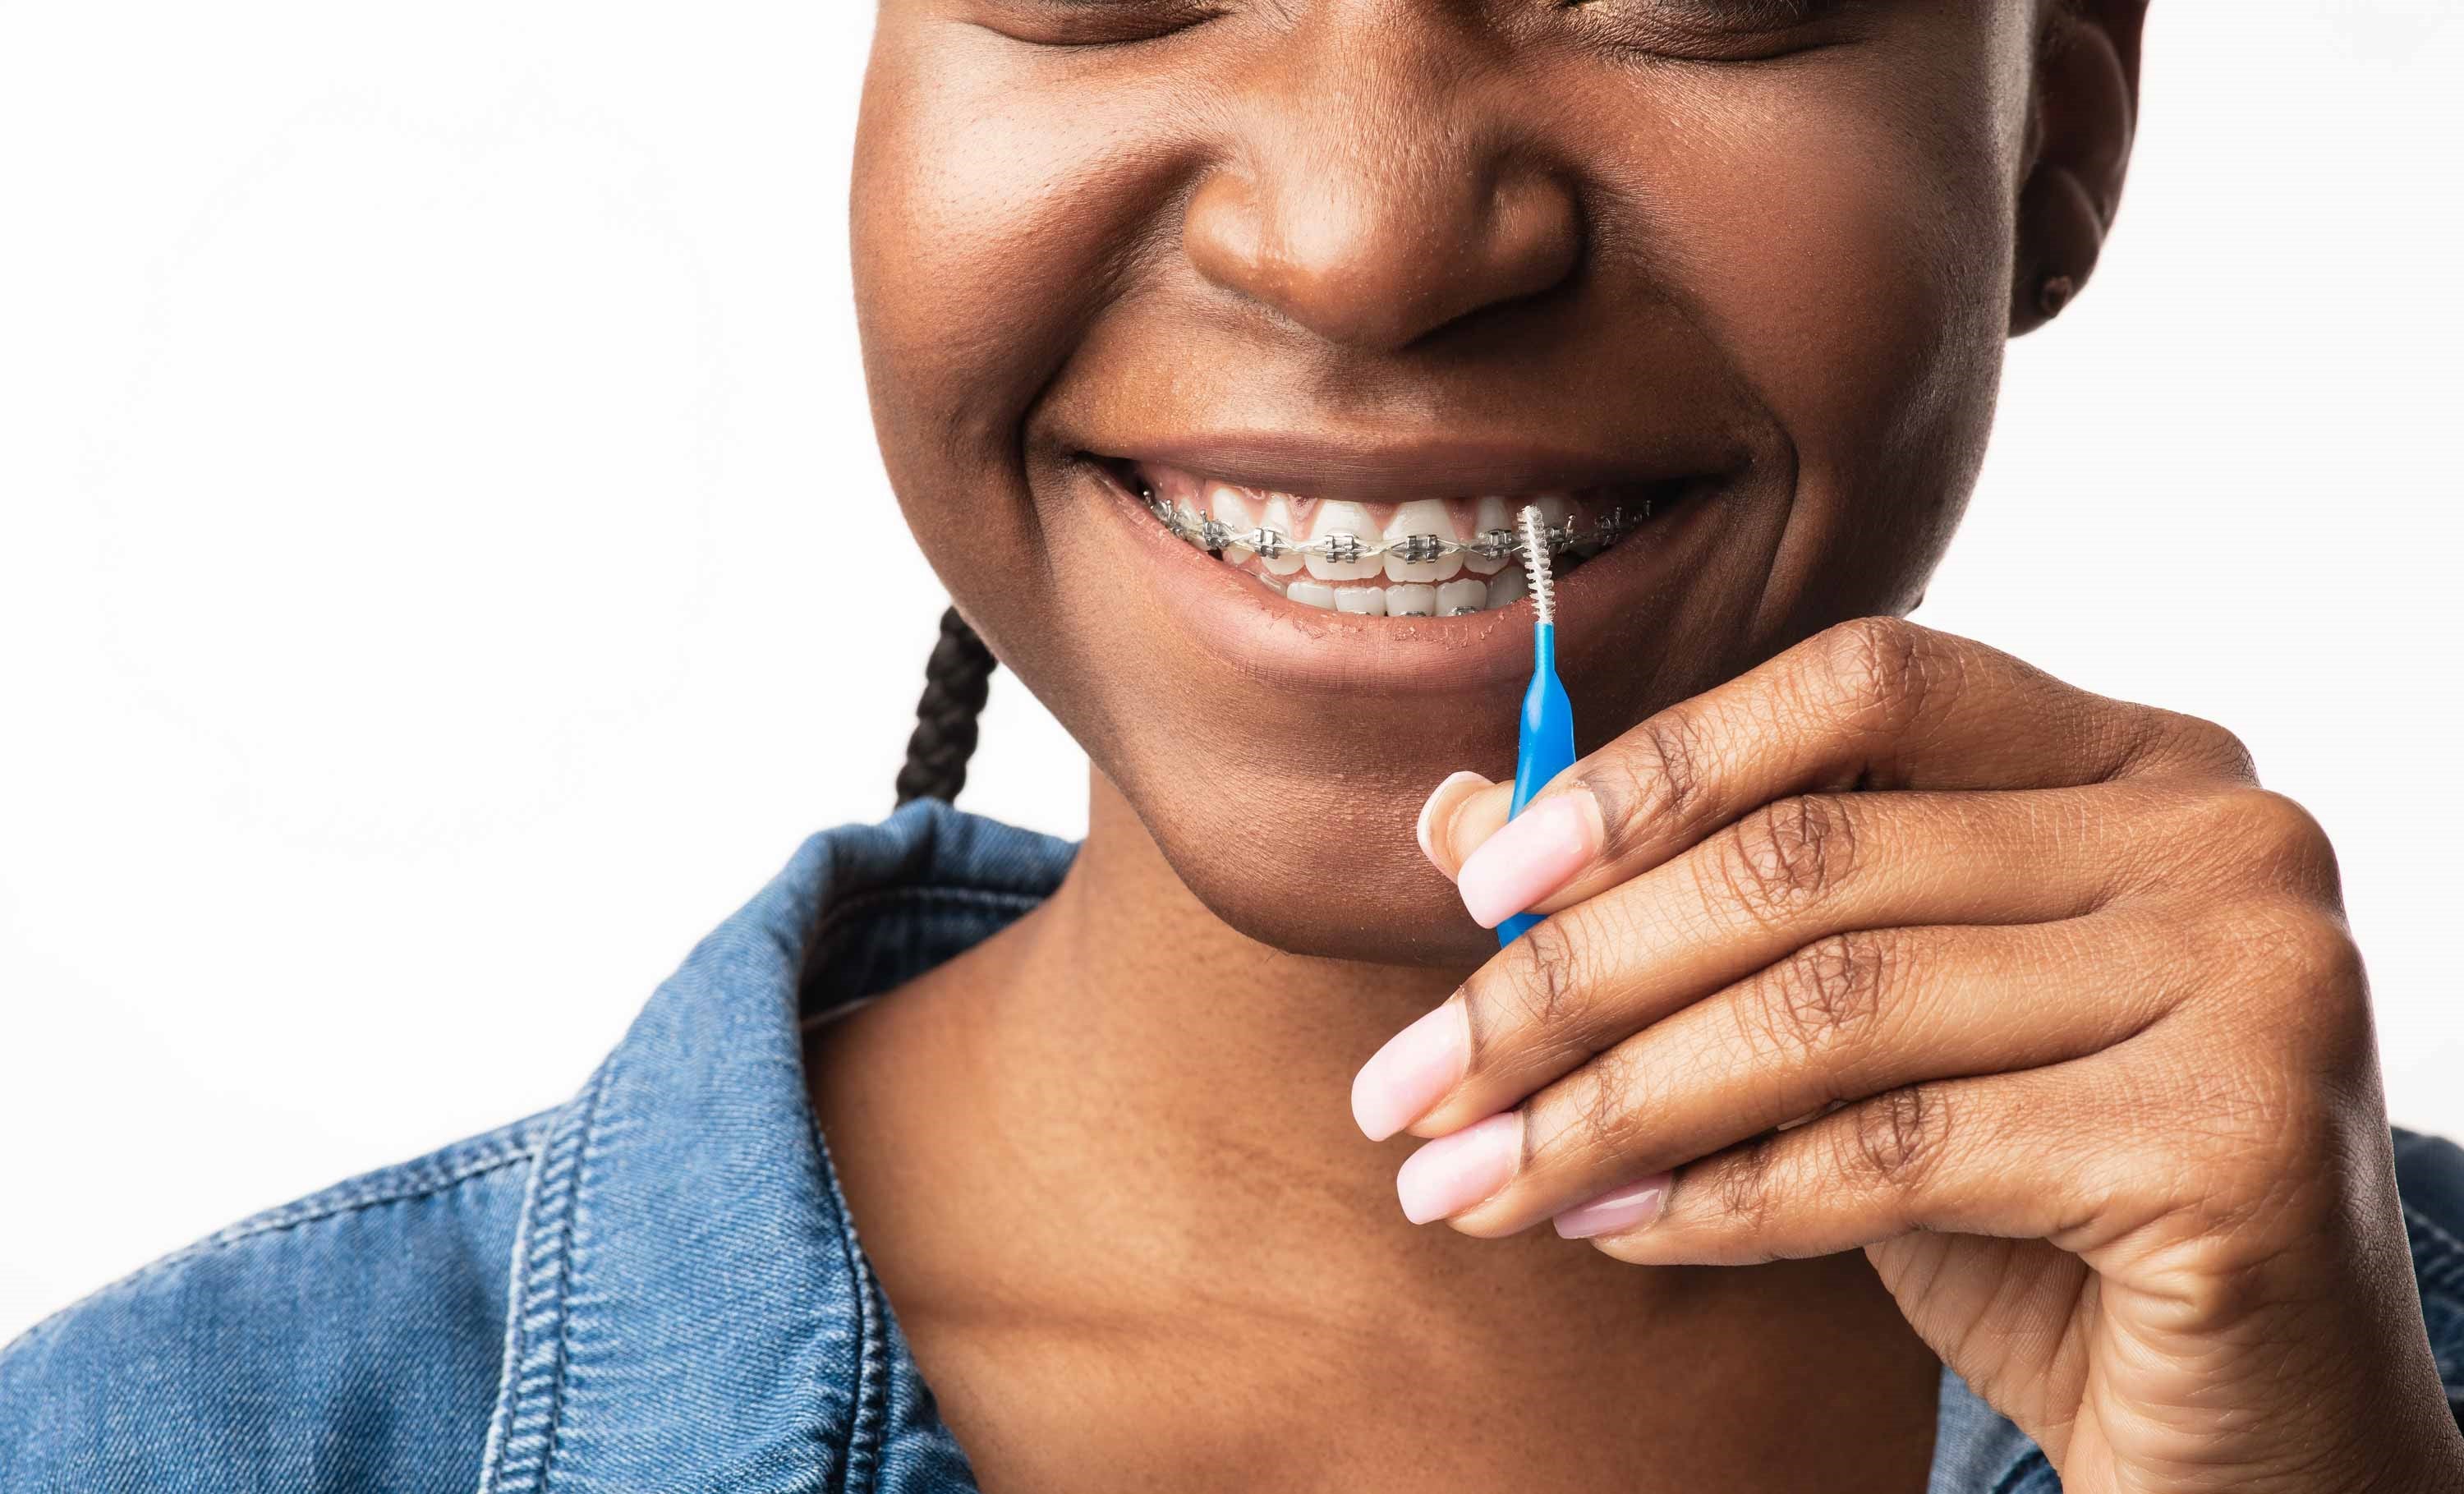 Mühelos Zähneputzen trotz Zahnspange